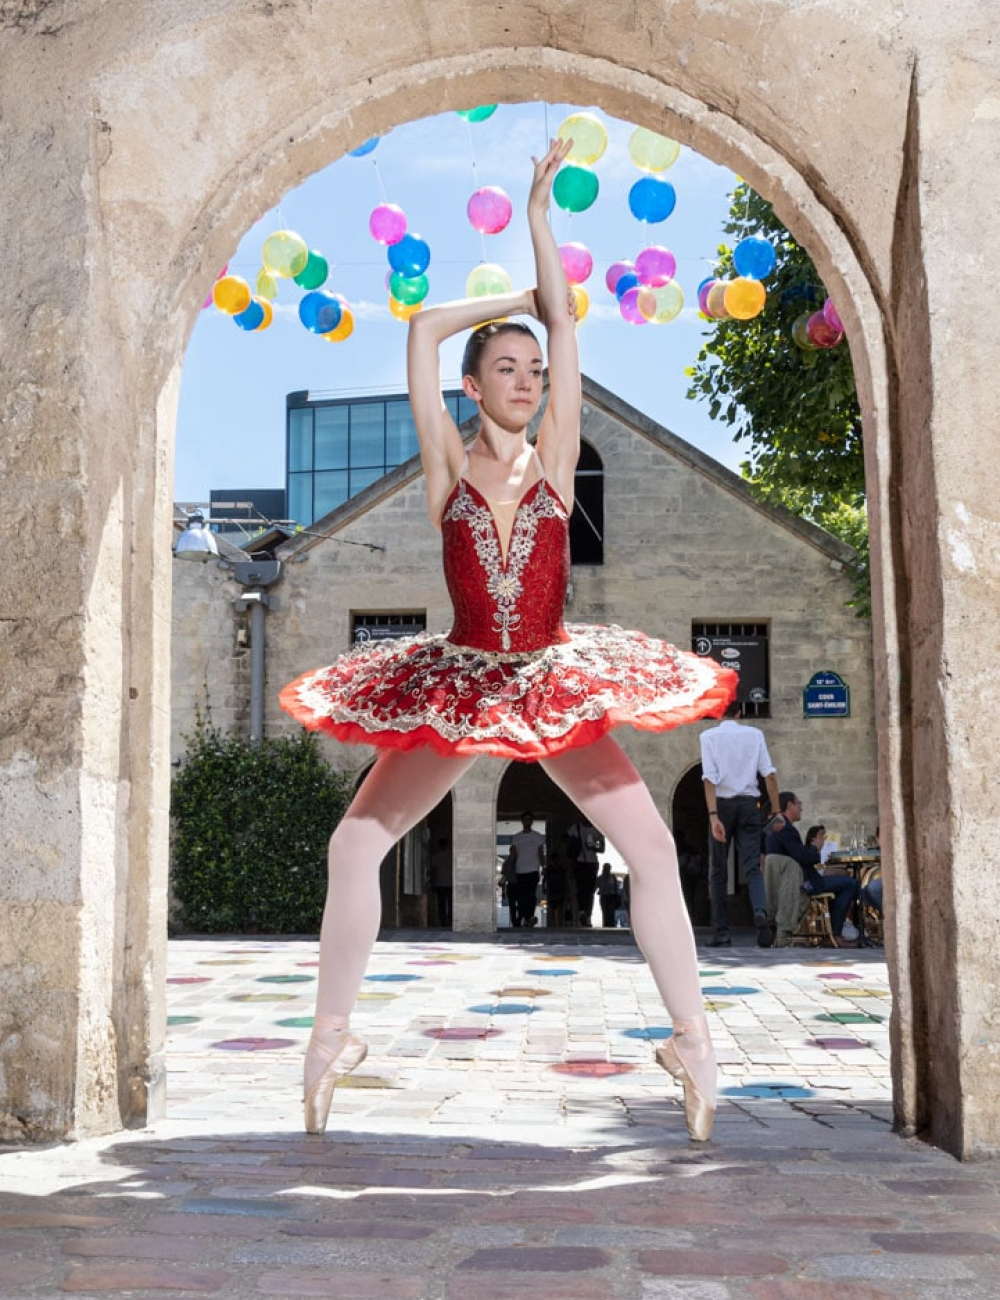 la danseuse exceptionnelle de ballet CYRIELLE JOST pendant notre deplacement dans les rue de BERCY VILLAGE Paris on a découvert des endroit manifique et chaleureux Crédit photo: © MARWAN MOUSSA / 2019 , مروان موسى, مصور